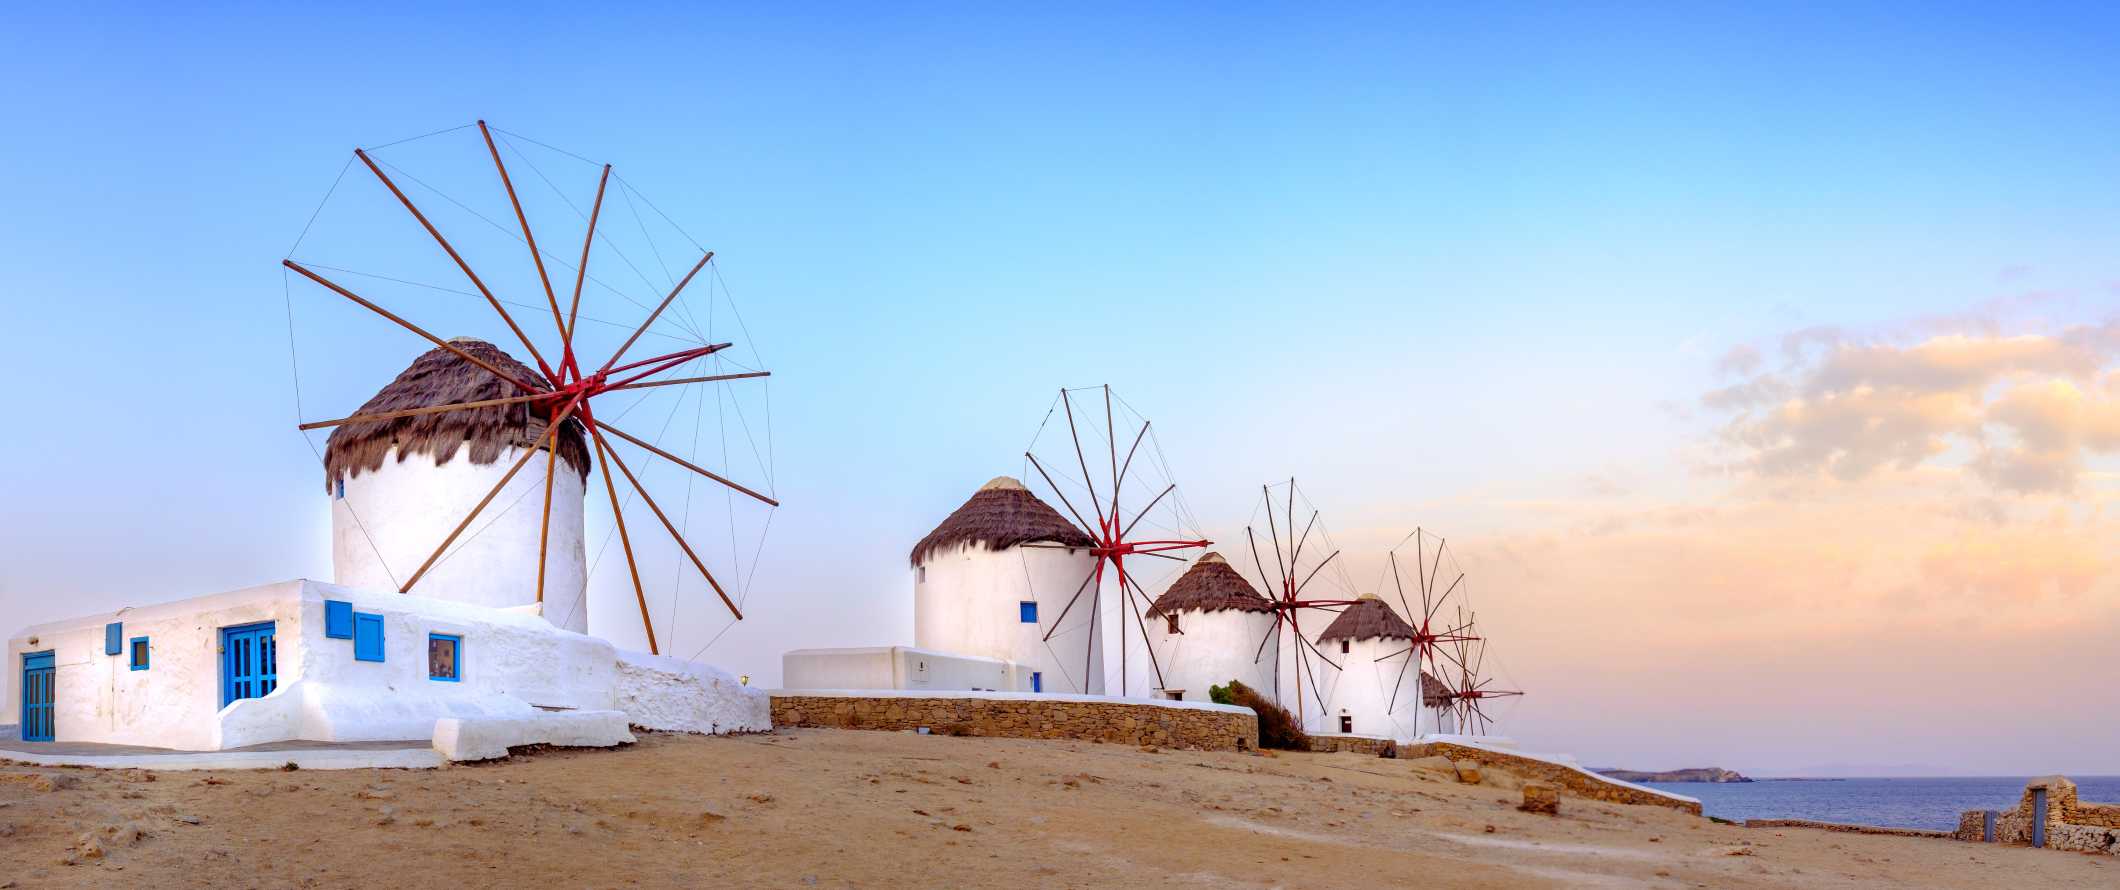 Quatro moinhos de vento ao pôr do sol na ilha de Mykonos, na Grécia